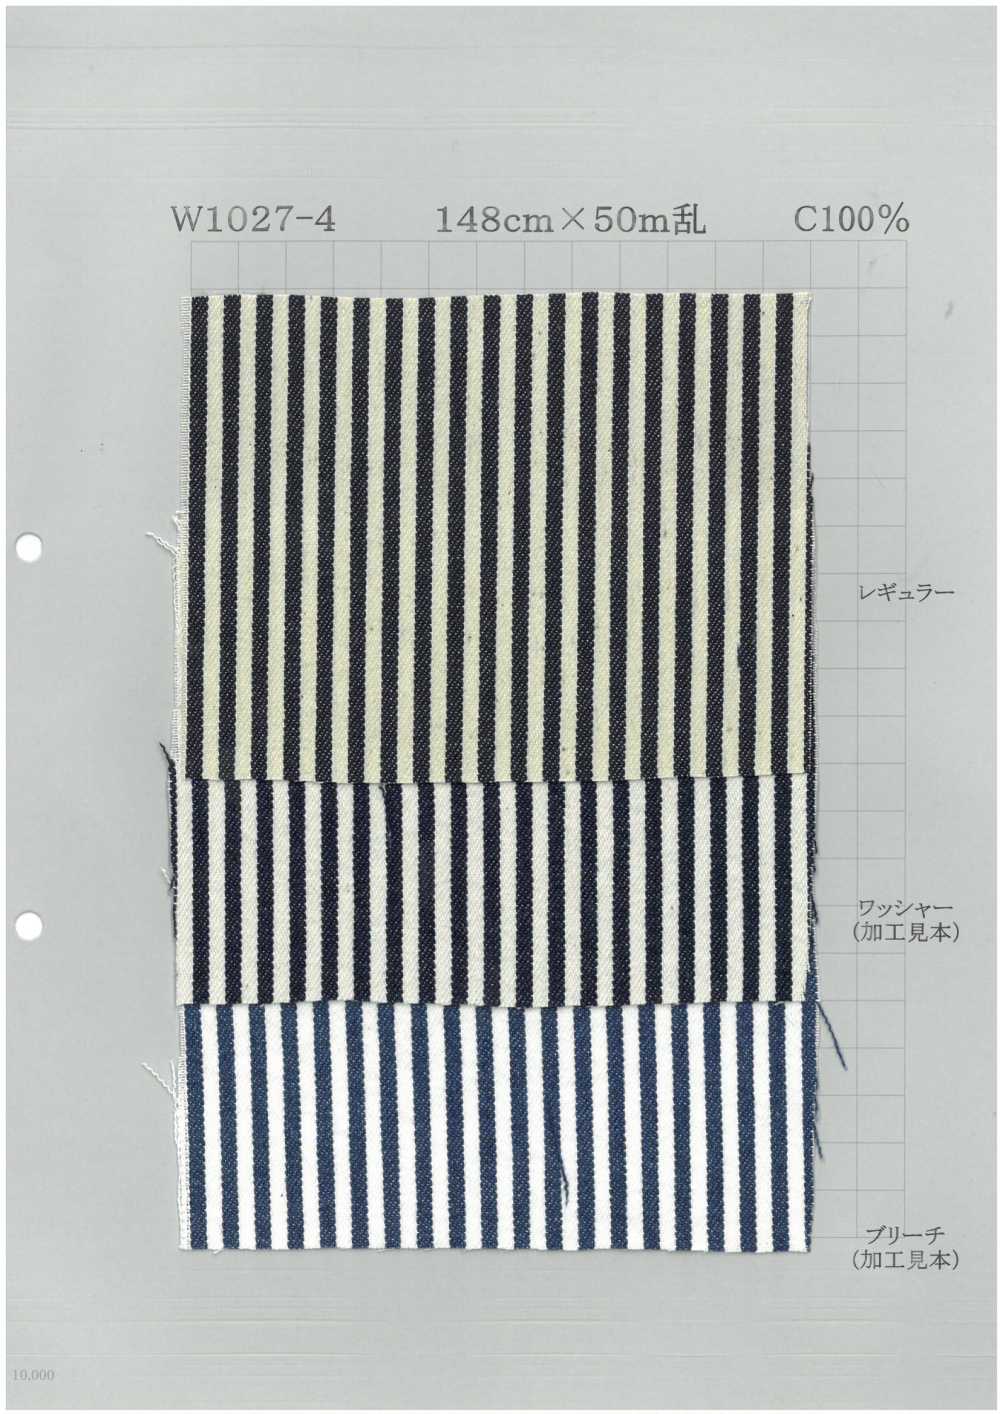 W1027-4 Denim De Coton à Rayures Audacieuses[Fabrication De Textile] Textile Yoshiwa